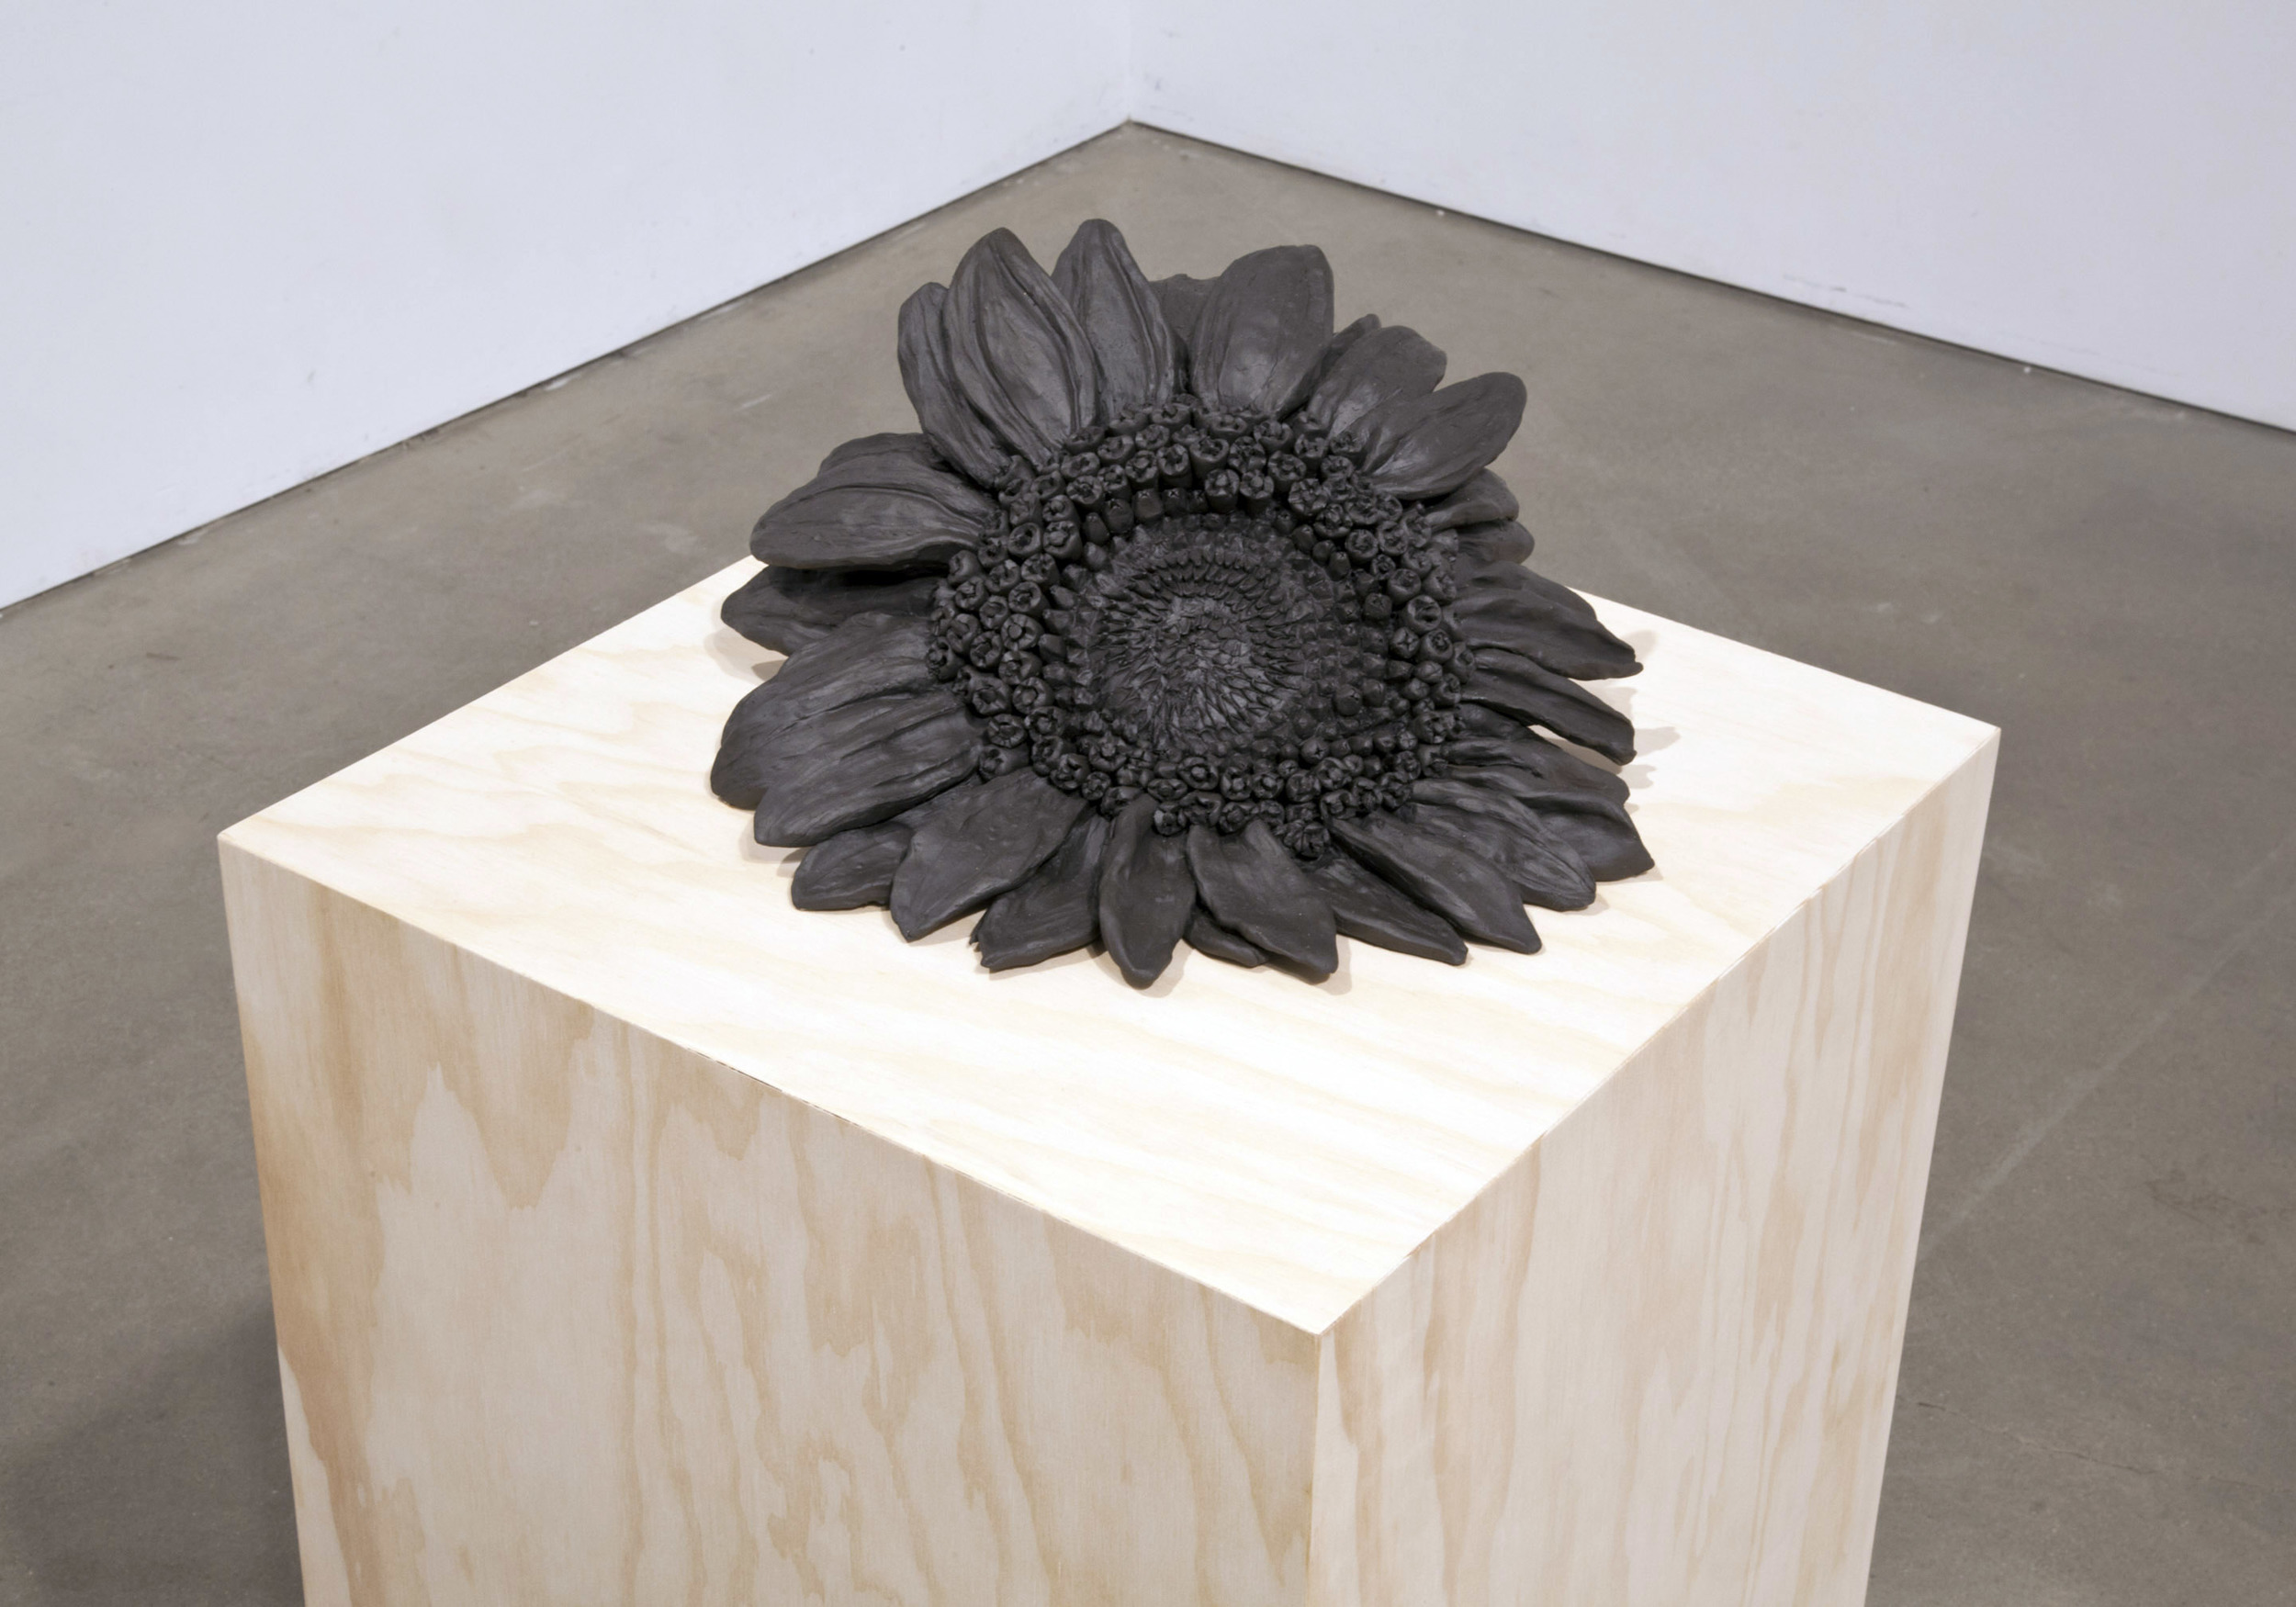  DETAIL  Sunflower , 2013 Stoneware, plywood pedestal 48 x 15 x 15 inches 